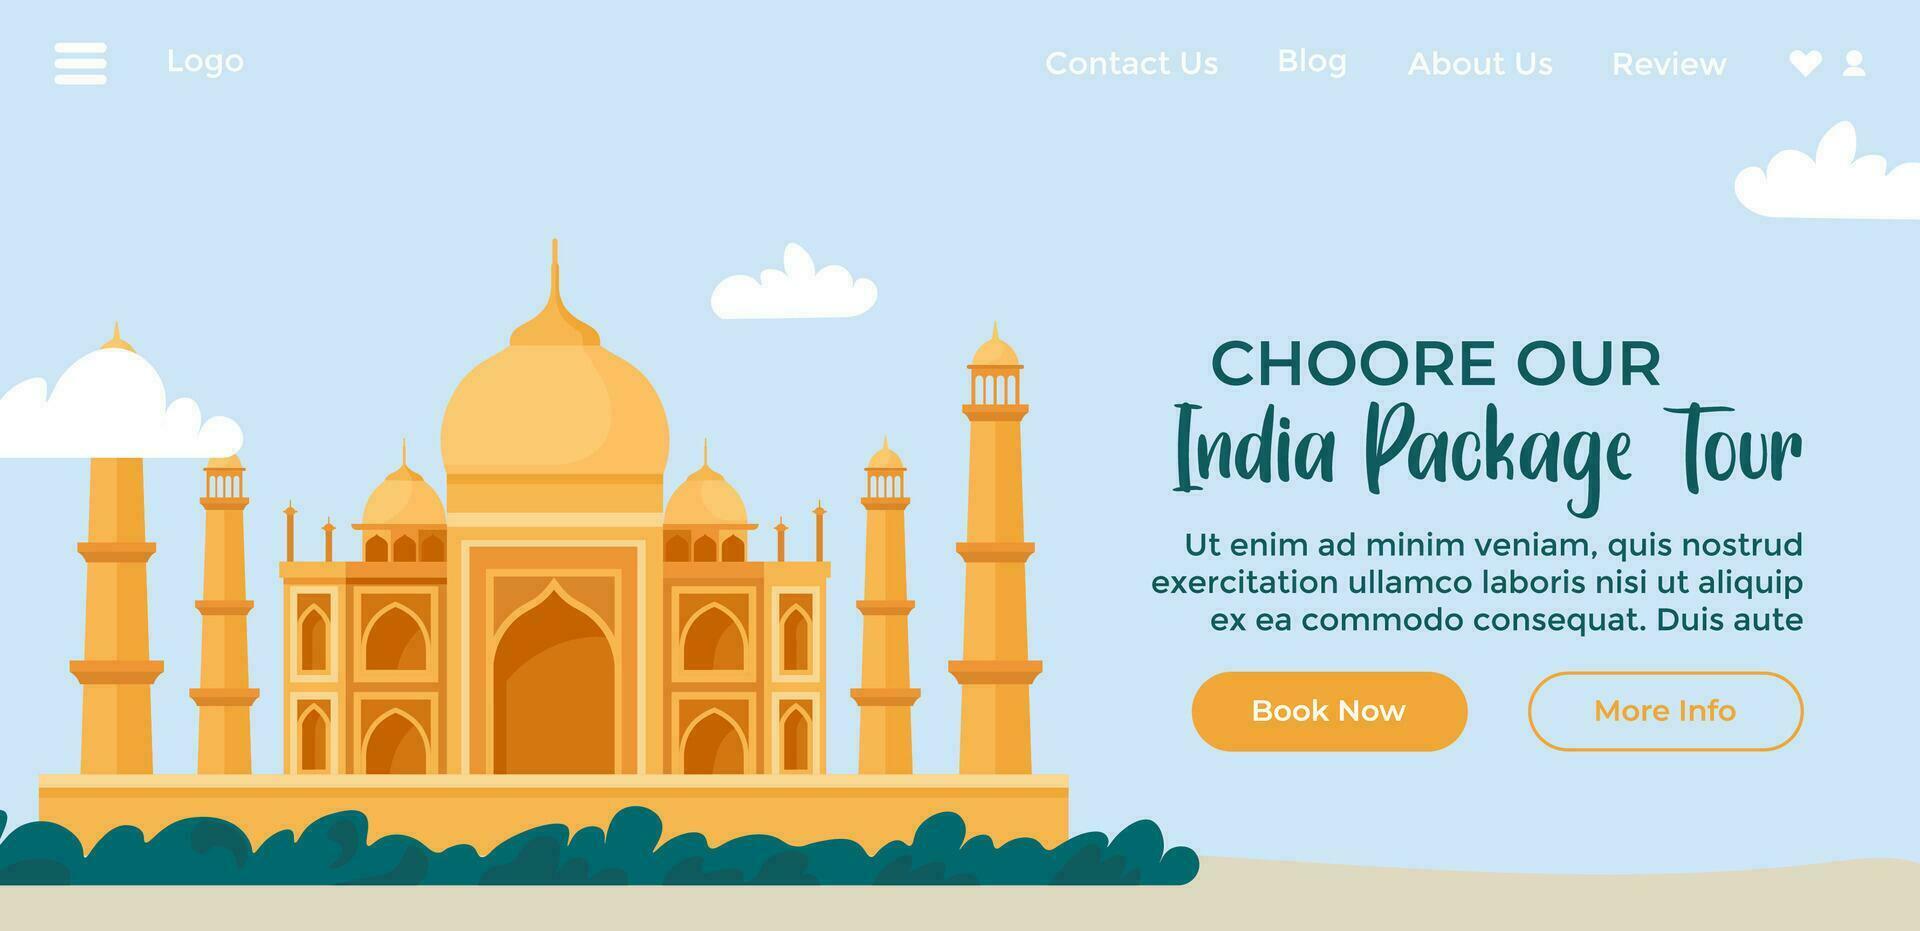 scegliere nostro India pacchi tournée, sito web pagina vettore